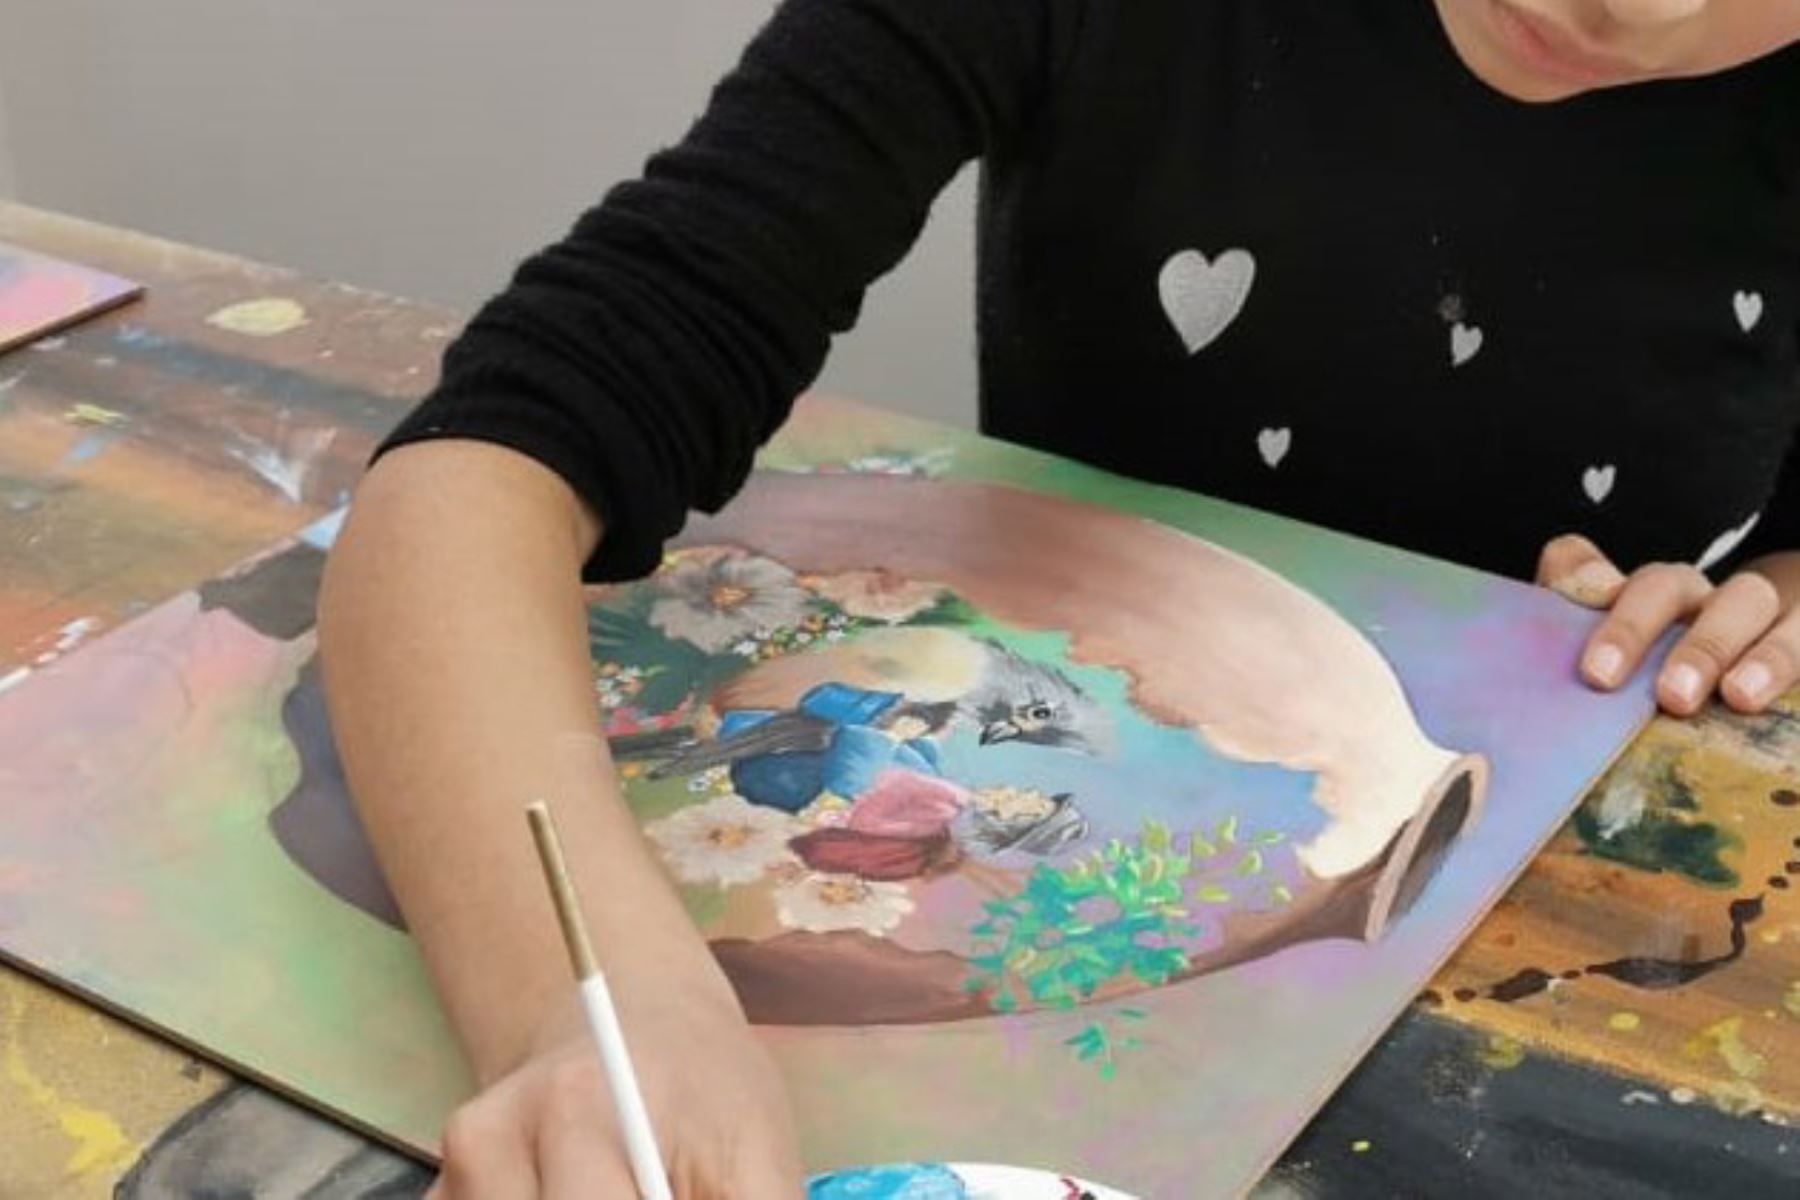 Sunass expondrá trabajos artísticos de estudiantes inspirados en valoración del agua